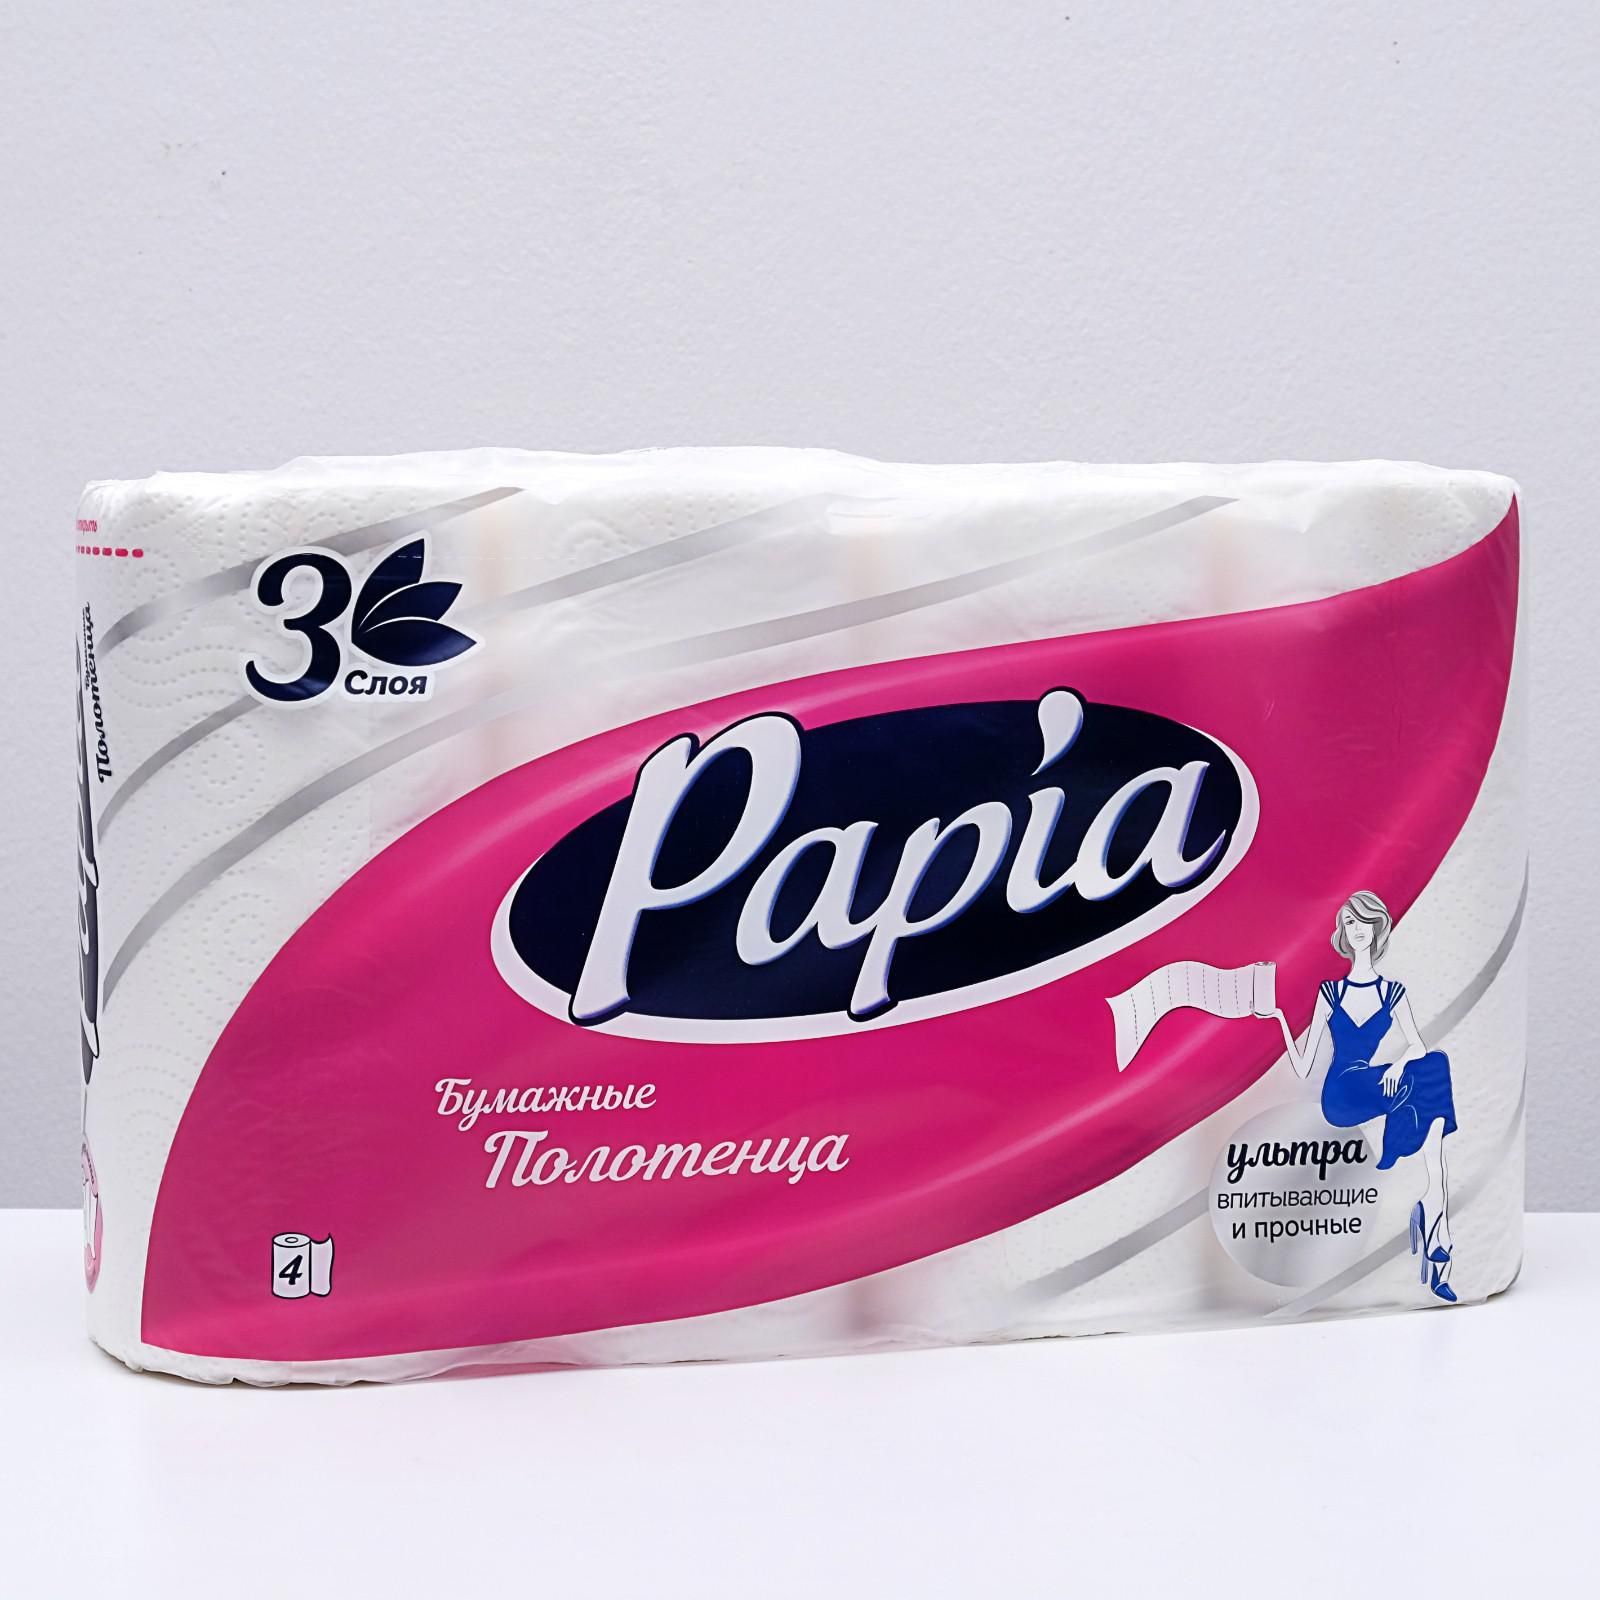 Полотенце папия. Papia бумажные полотенца 3сл 2 рулона Maxi. Papia бумажные полотенца 3 слоя 2 +1. Папия 4 слоев полотенце бумажное. Полотенца бумажные Papia белые 3-сл. 4шт.